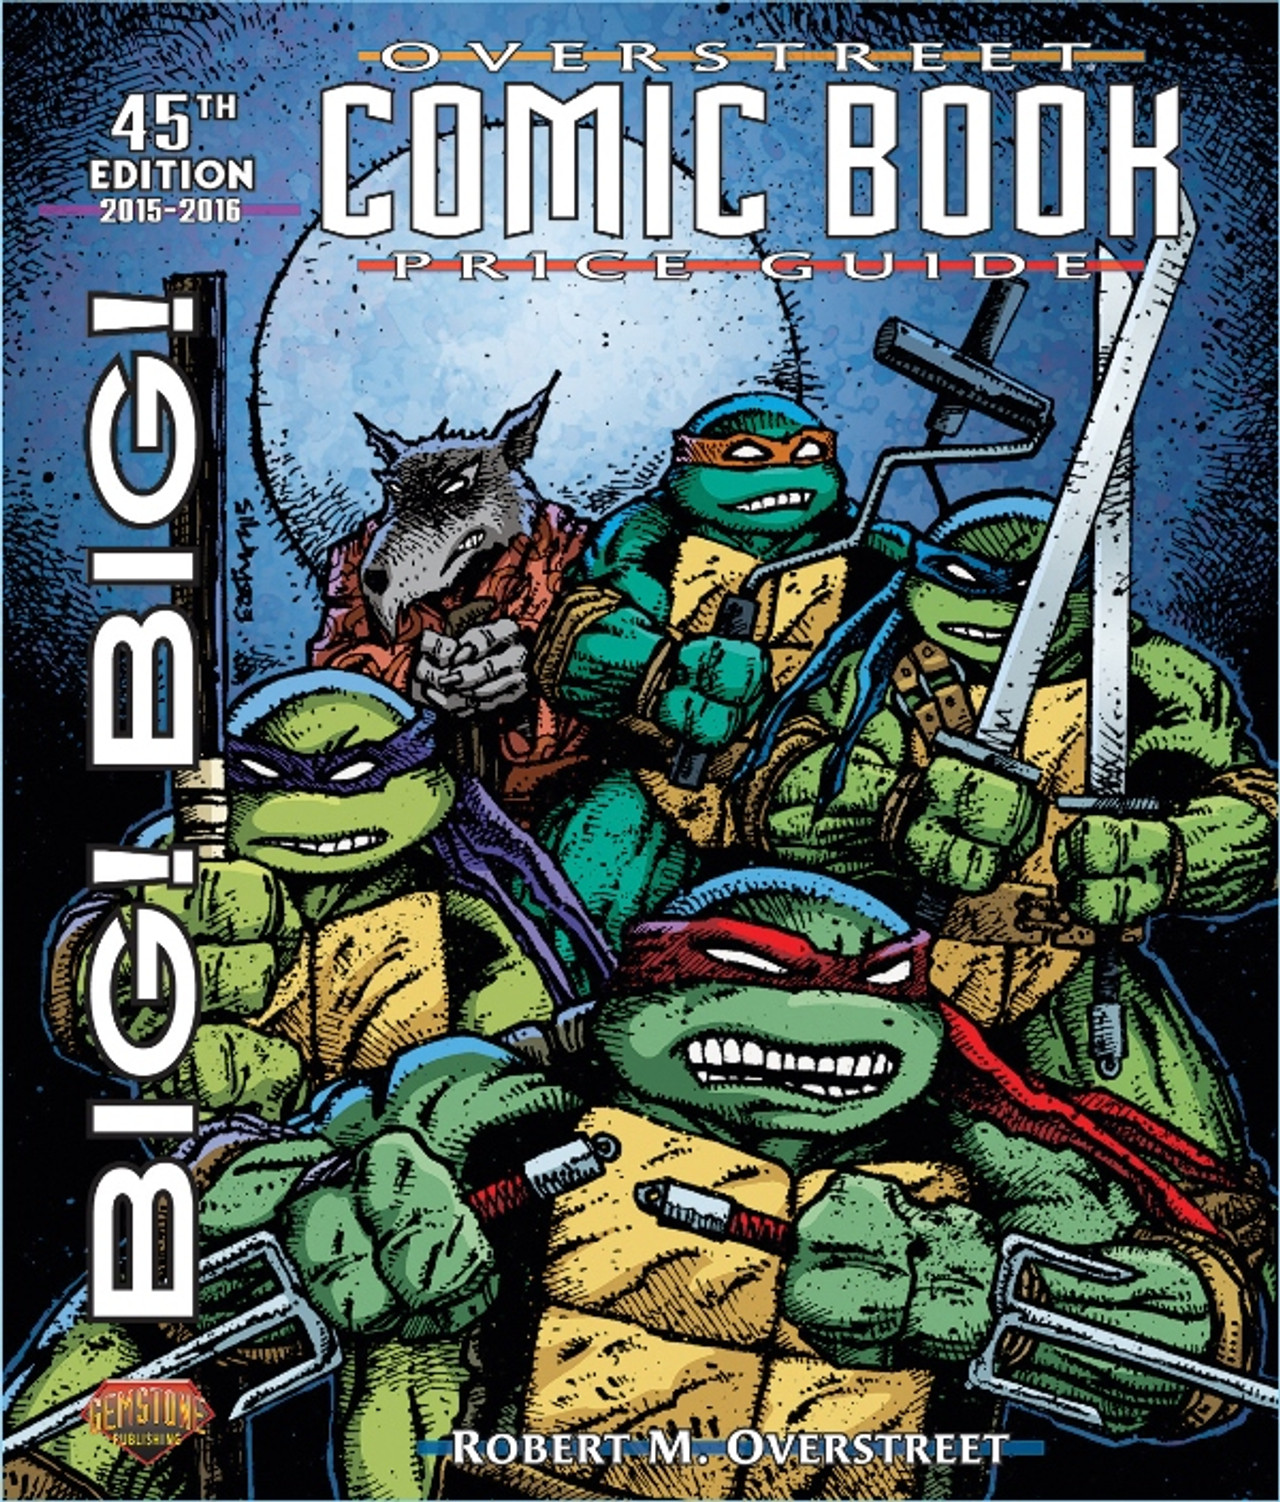 The Big Book of Ninja Turtles (Teenage Mutant Ninja Turtles) (Big